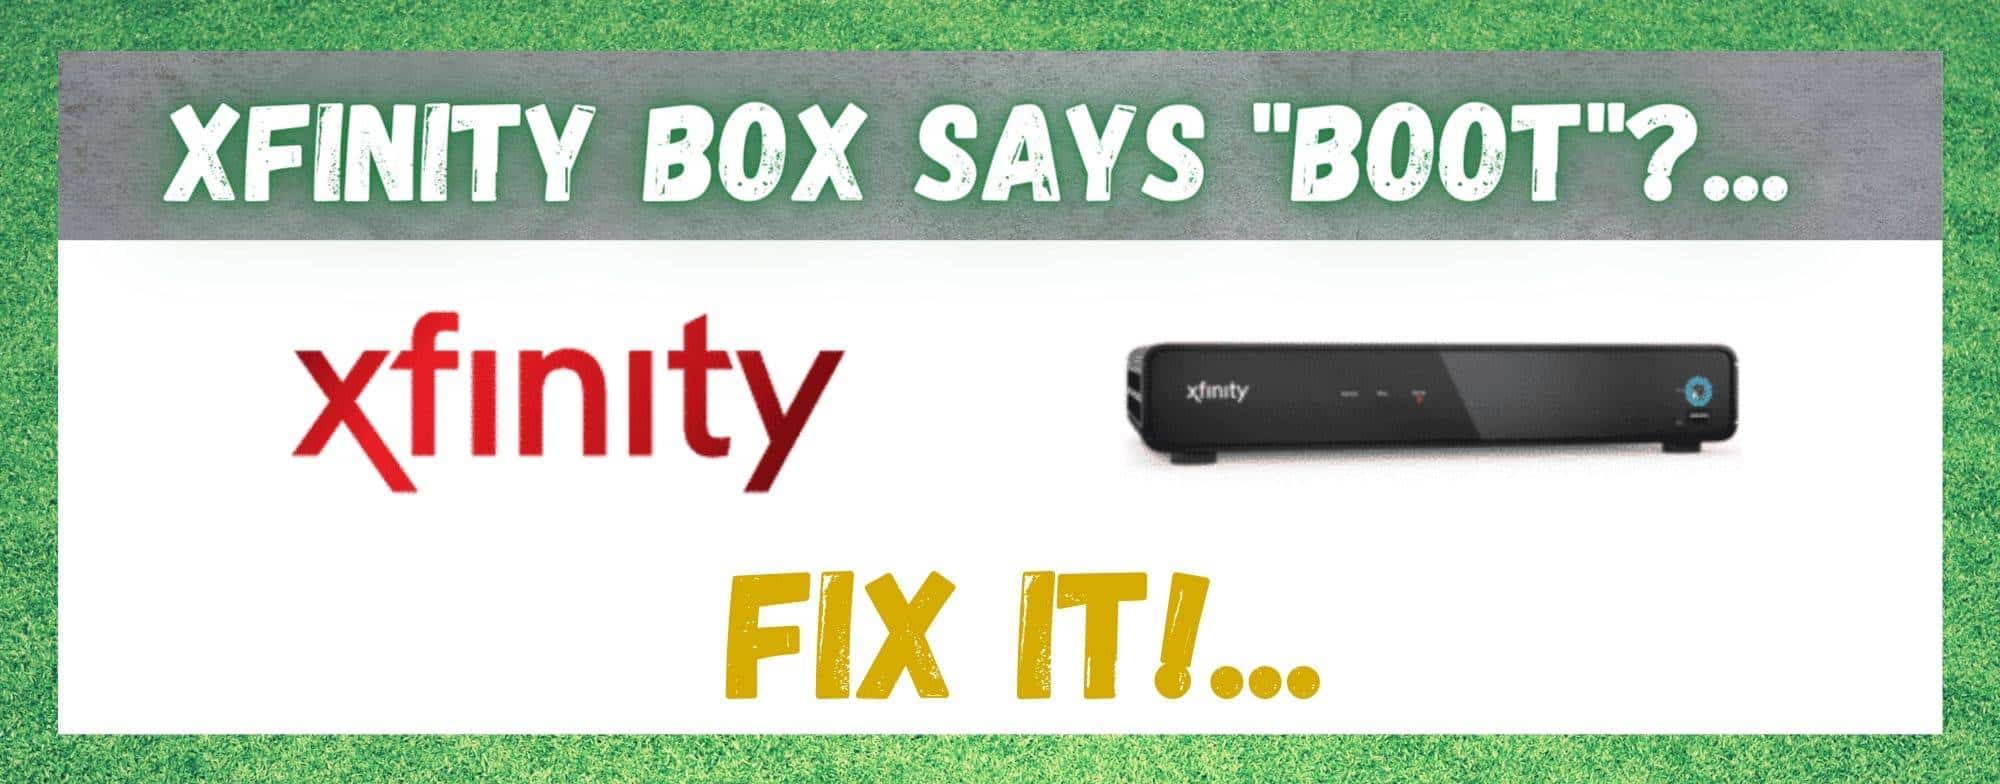 Xfinity Box က Boot ဟုပြောသည်- ပြင်ဆင်ရန် နည်းလမ်း 4 ခု